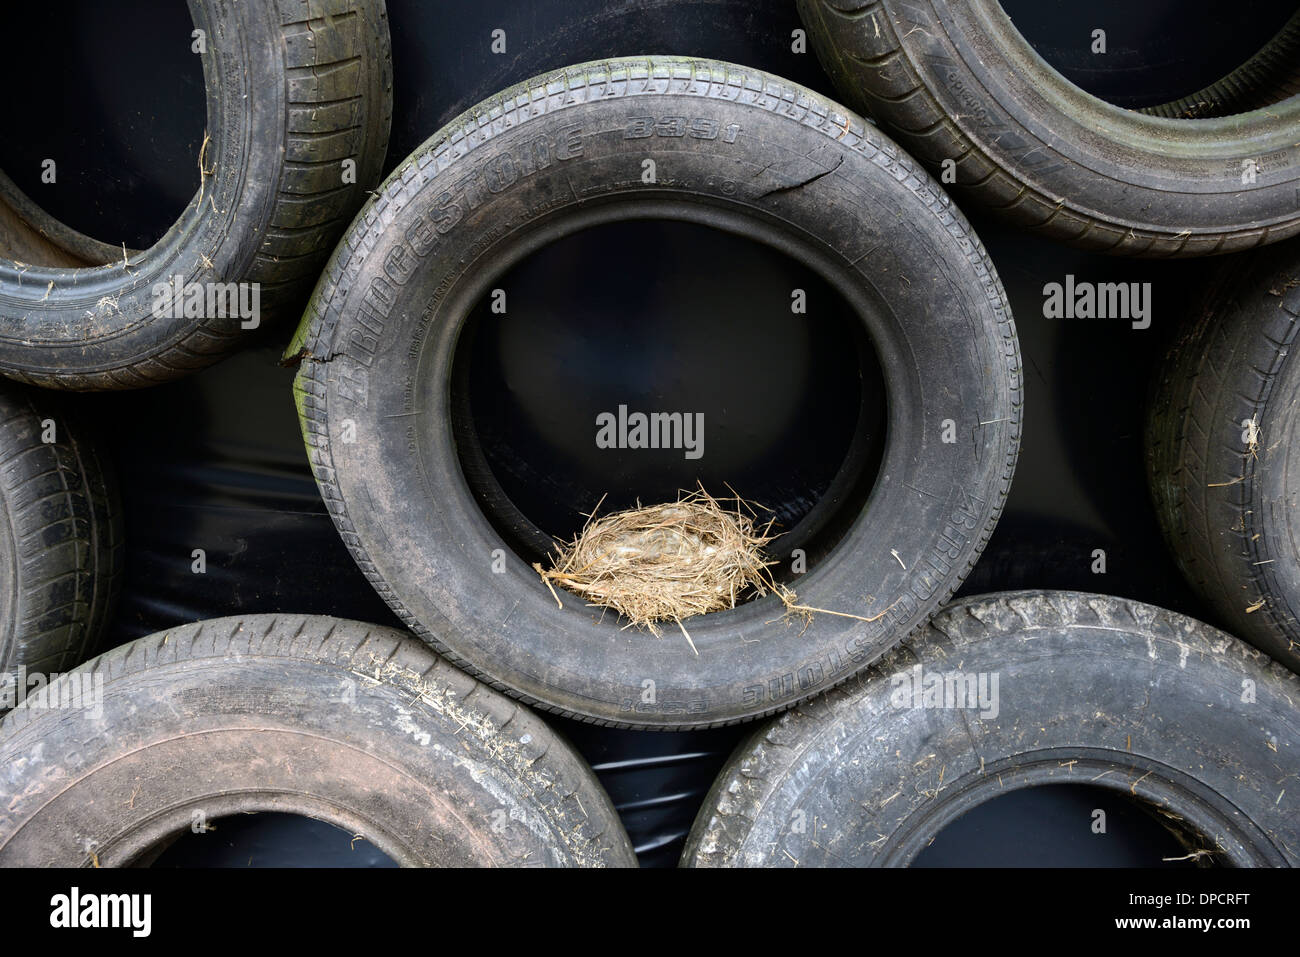 Nido di uccelli in nero pneumatici insilato stack pit farm insolito aprire poco sicuro insicuro luogo di nidificazione di uccelli Foto Stock